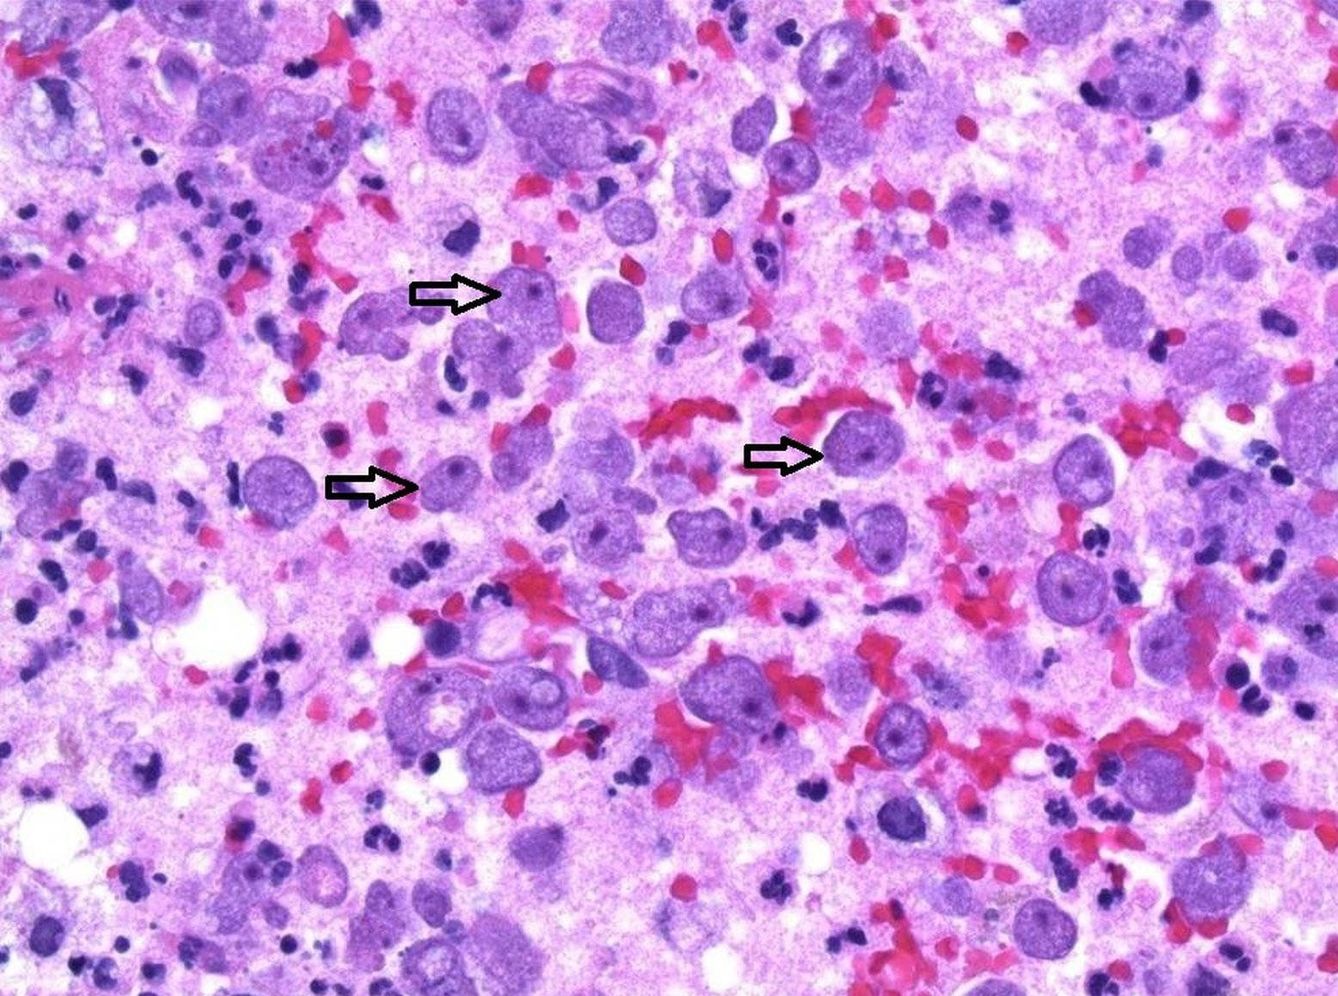 Solo cuando pasaron los tejidos por el microscopio detectaron las amebas. (Foto: Swedish Medical Center)